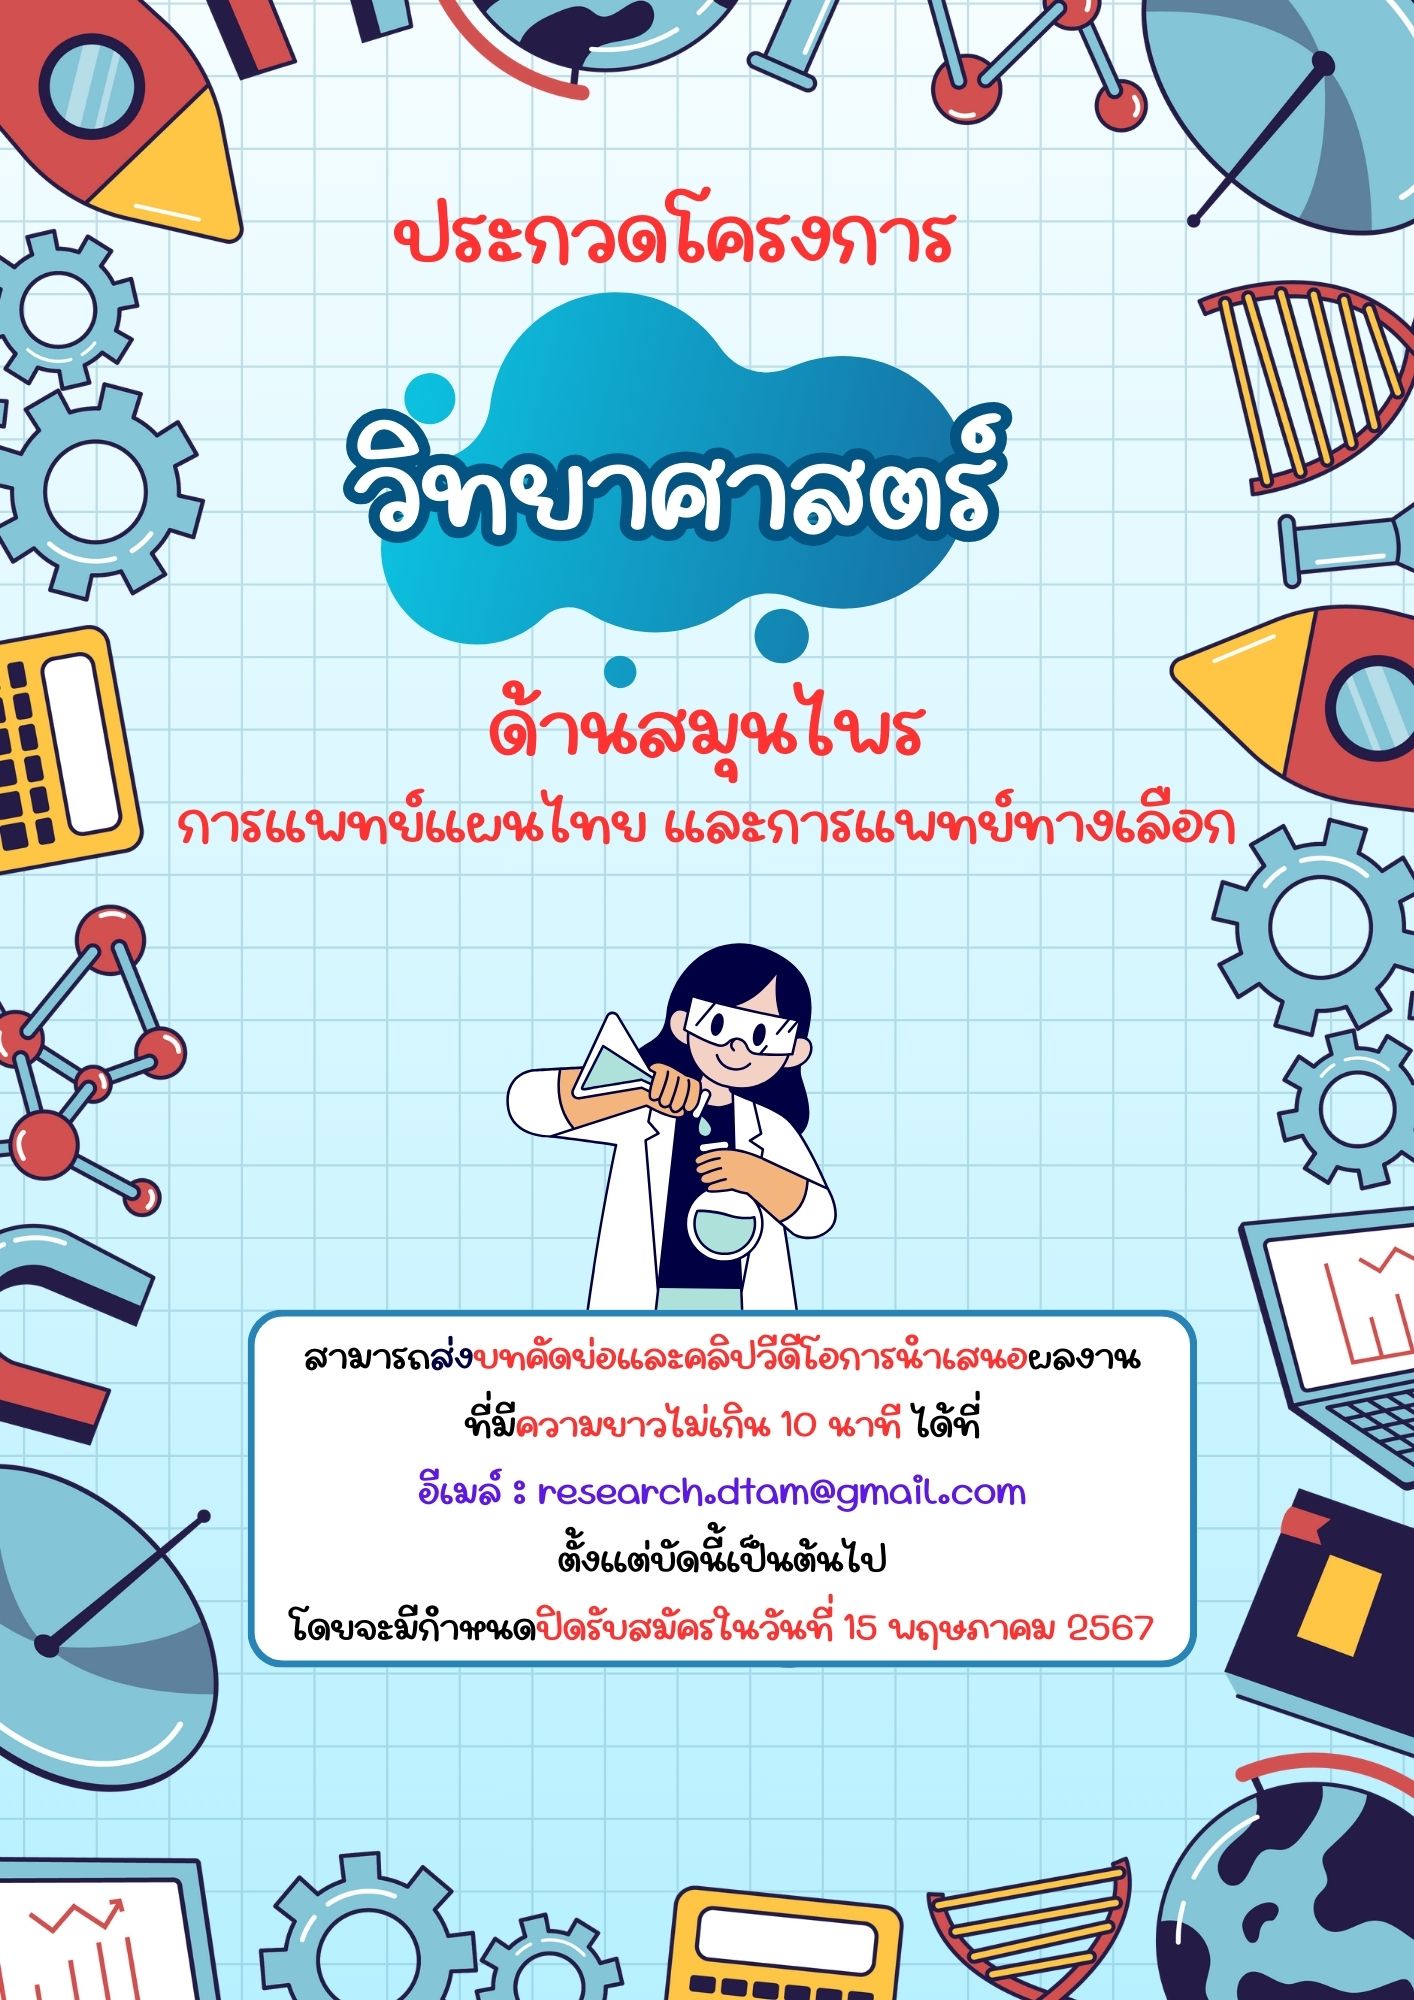 ประกวดโครงงานวิทยาศาสตร์ ด้านสมุนไพร การแพทย์แผนไทย และการแพทย์ทางเลือกแห่งชาติ ครั้งที่ 21